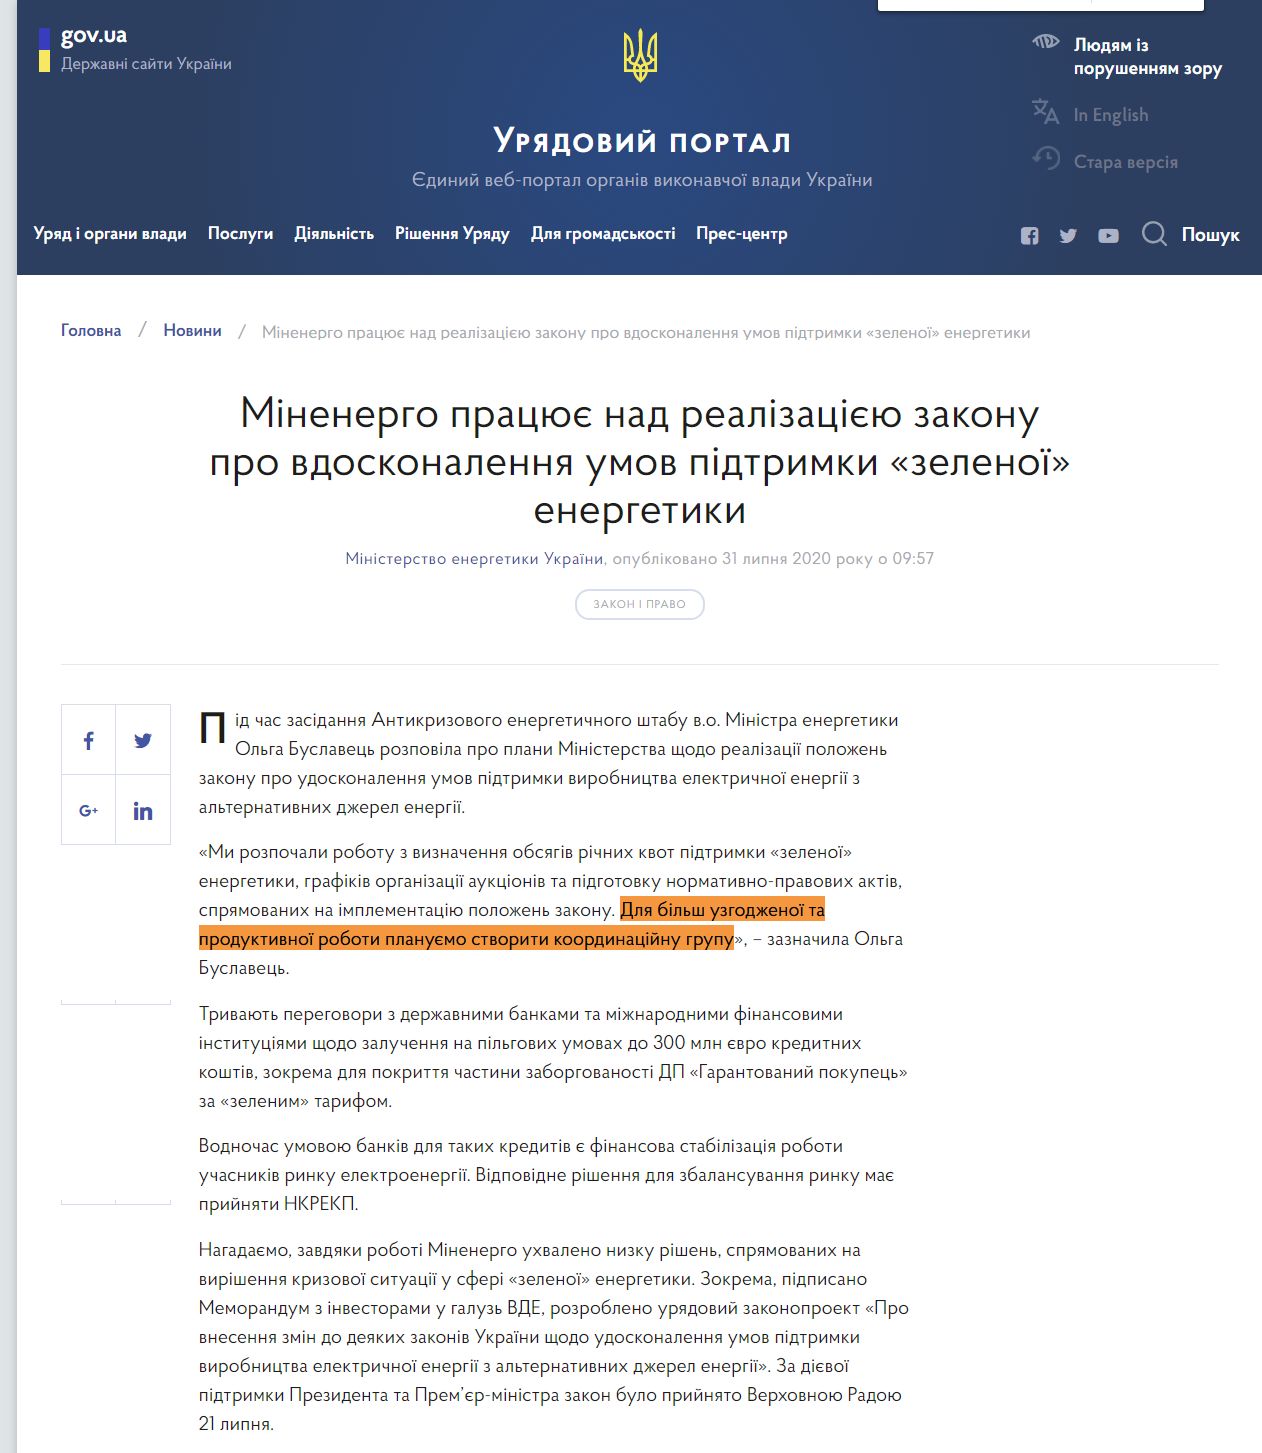 https://www.kmu.gov.ua/news/minenergo-pracyuye-nad-realizaciyeyu-zakonu-pro-vdoskonalennya-umov-pidtrimki-zelenoyi-energetiki